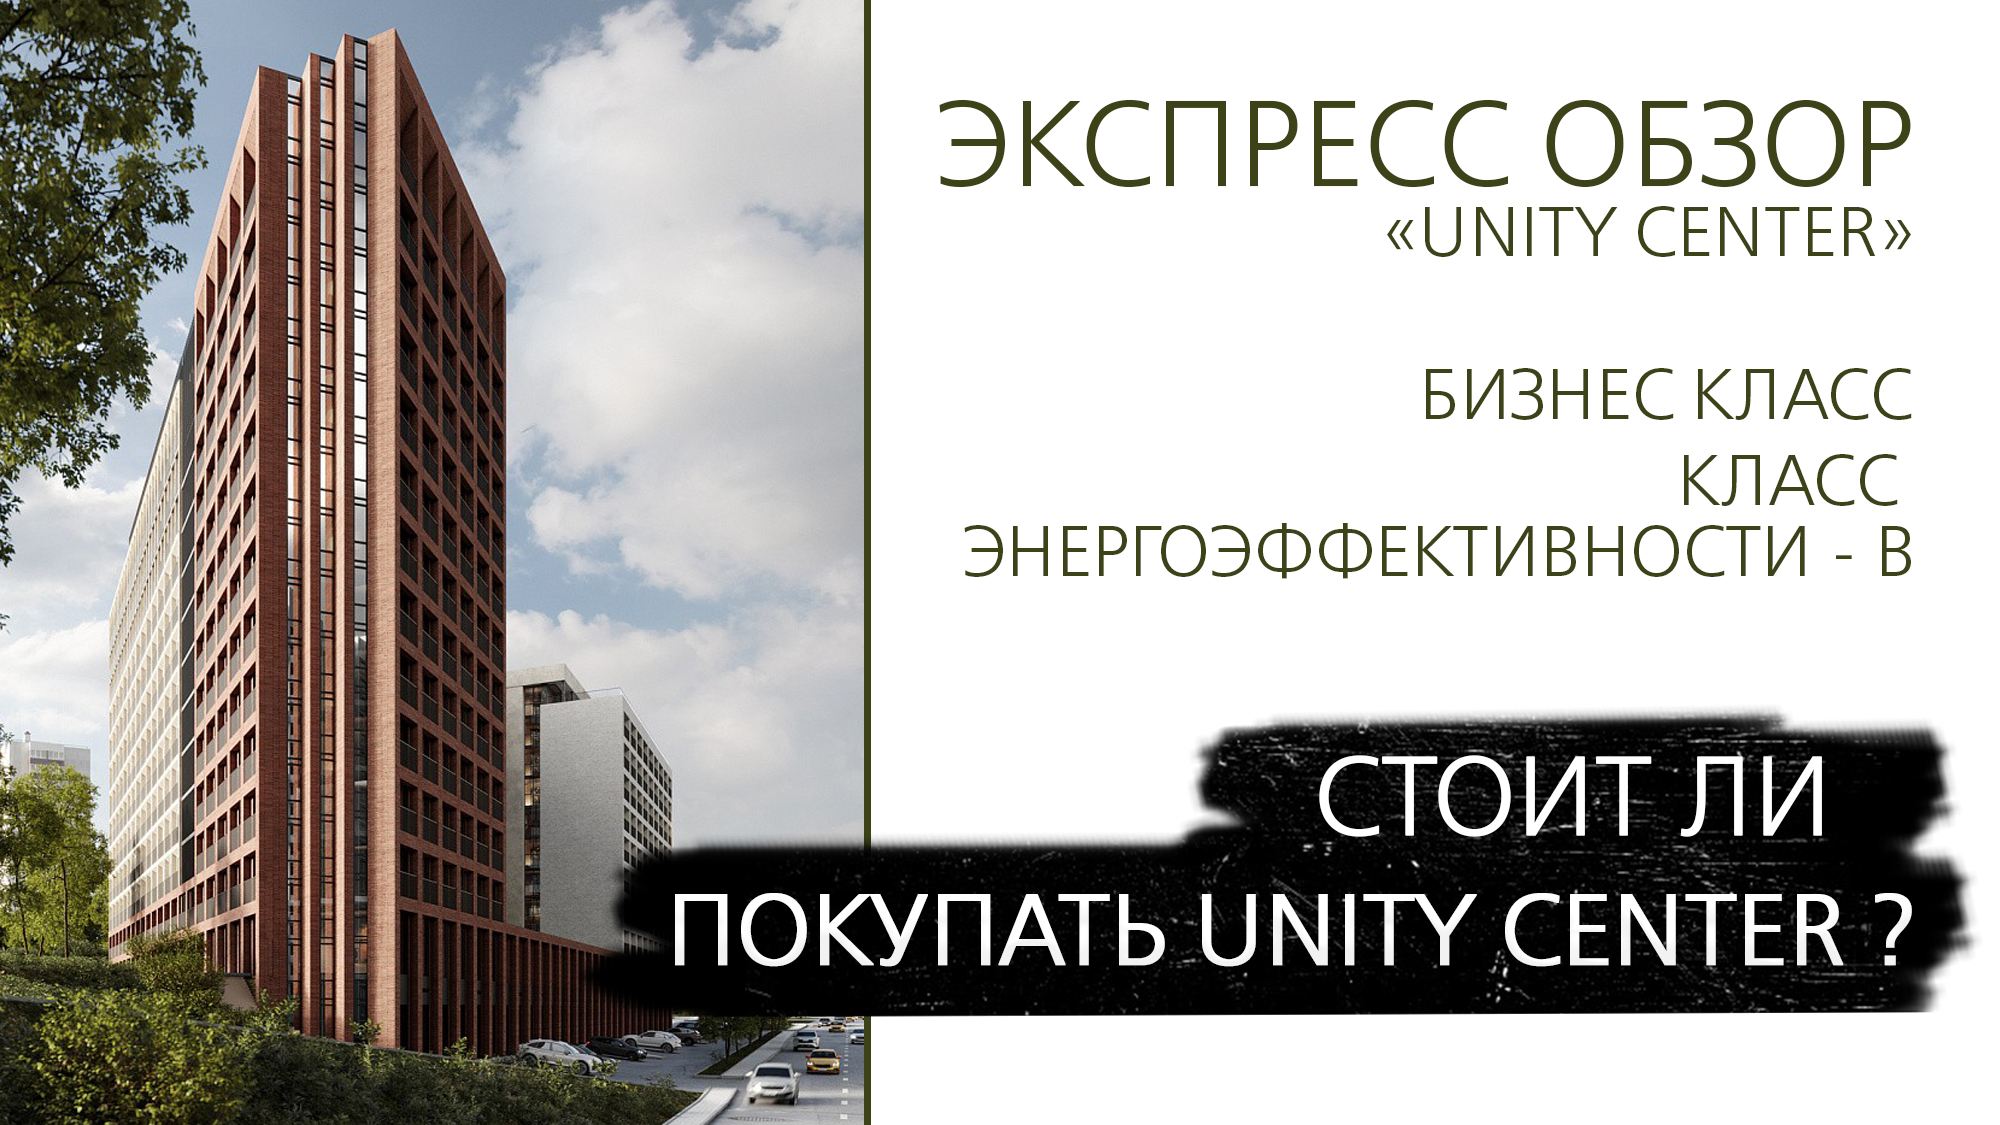 Экспресс обзор ЖК Unity Center